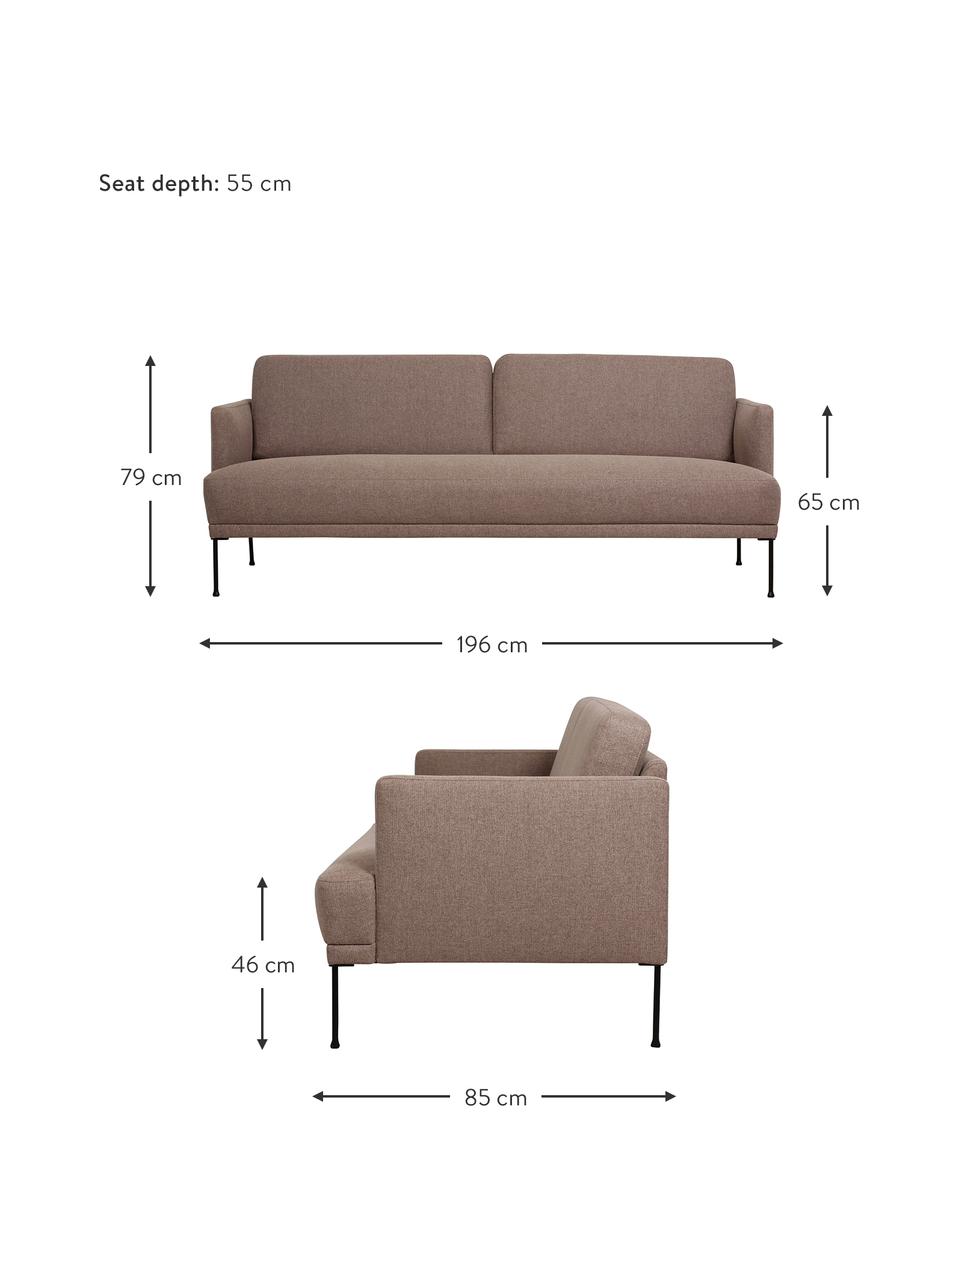 Sofa Fluente (3-Sitzer) mit Metall-Füßen, Bezug: 100% Polyester 115.000 Sc, Gestell: Massives Kiefernholz, FSC, Füße: Metall, pulverbeschichtet, Webstoff Braun, B 196 x T 85 cm